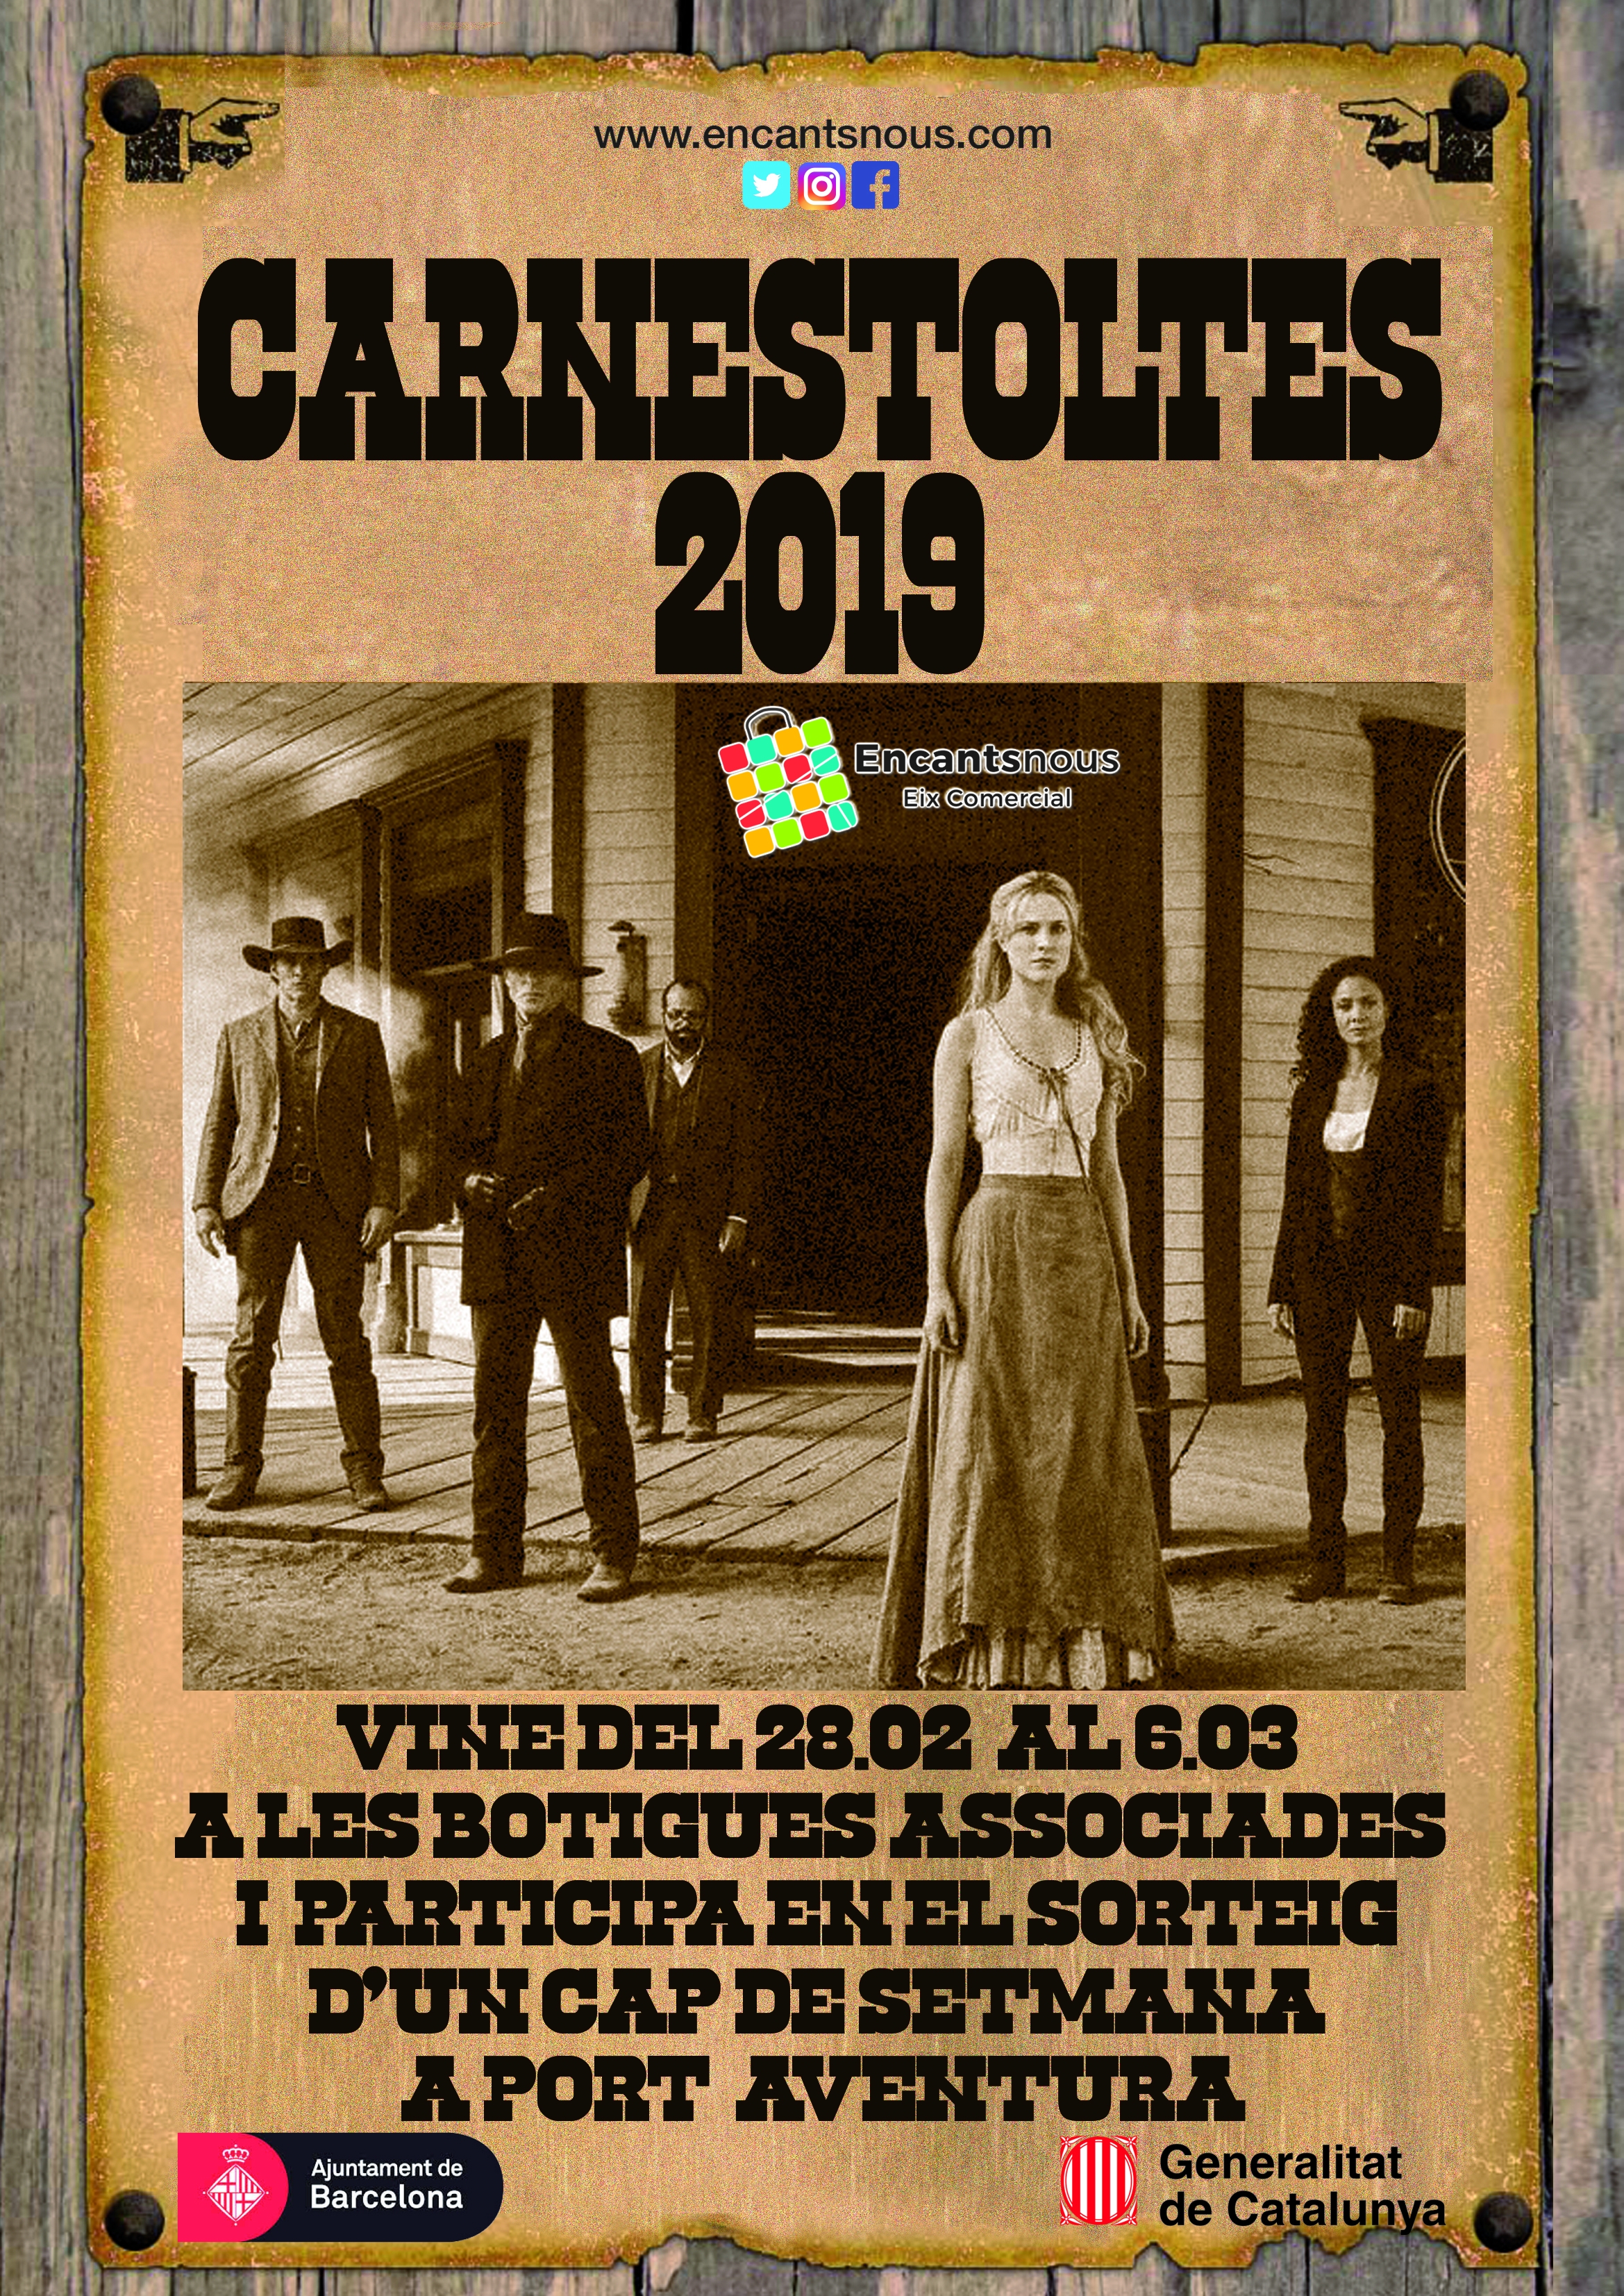 Carnestoltes 2019!